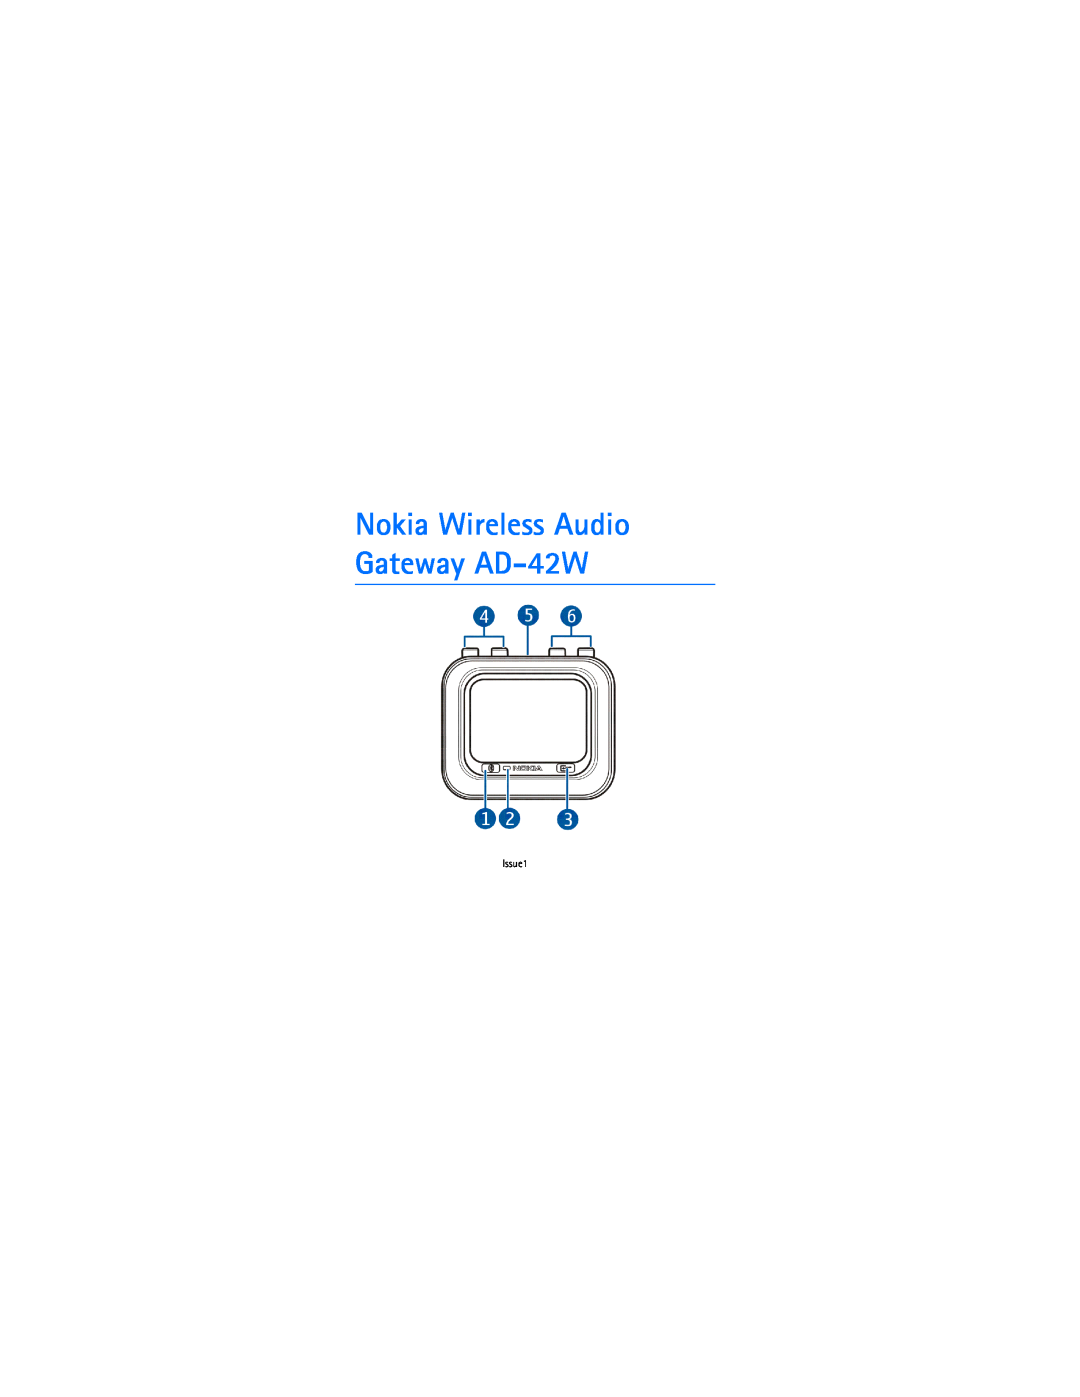 Nokia manual Nokia Wireless Audio Gateway AD-42W, Issue1 